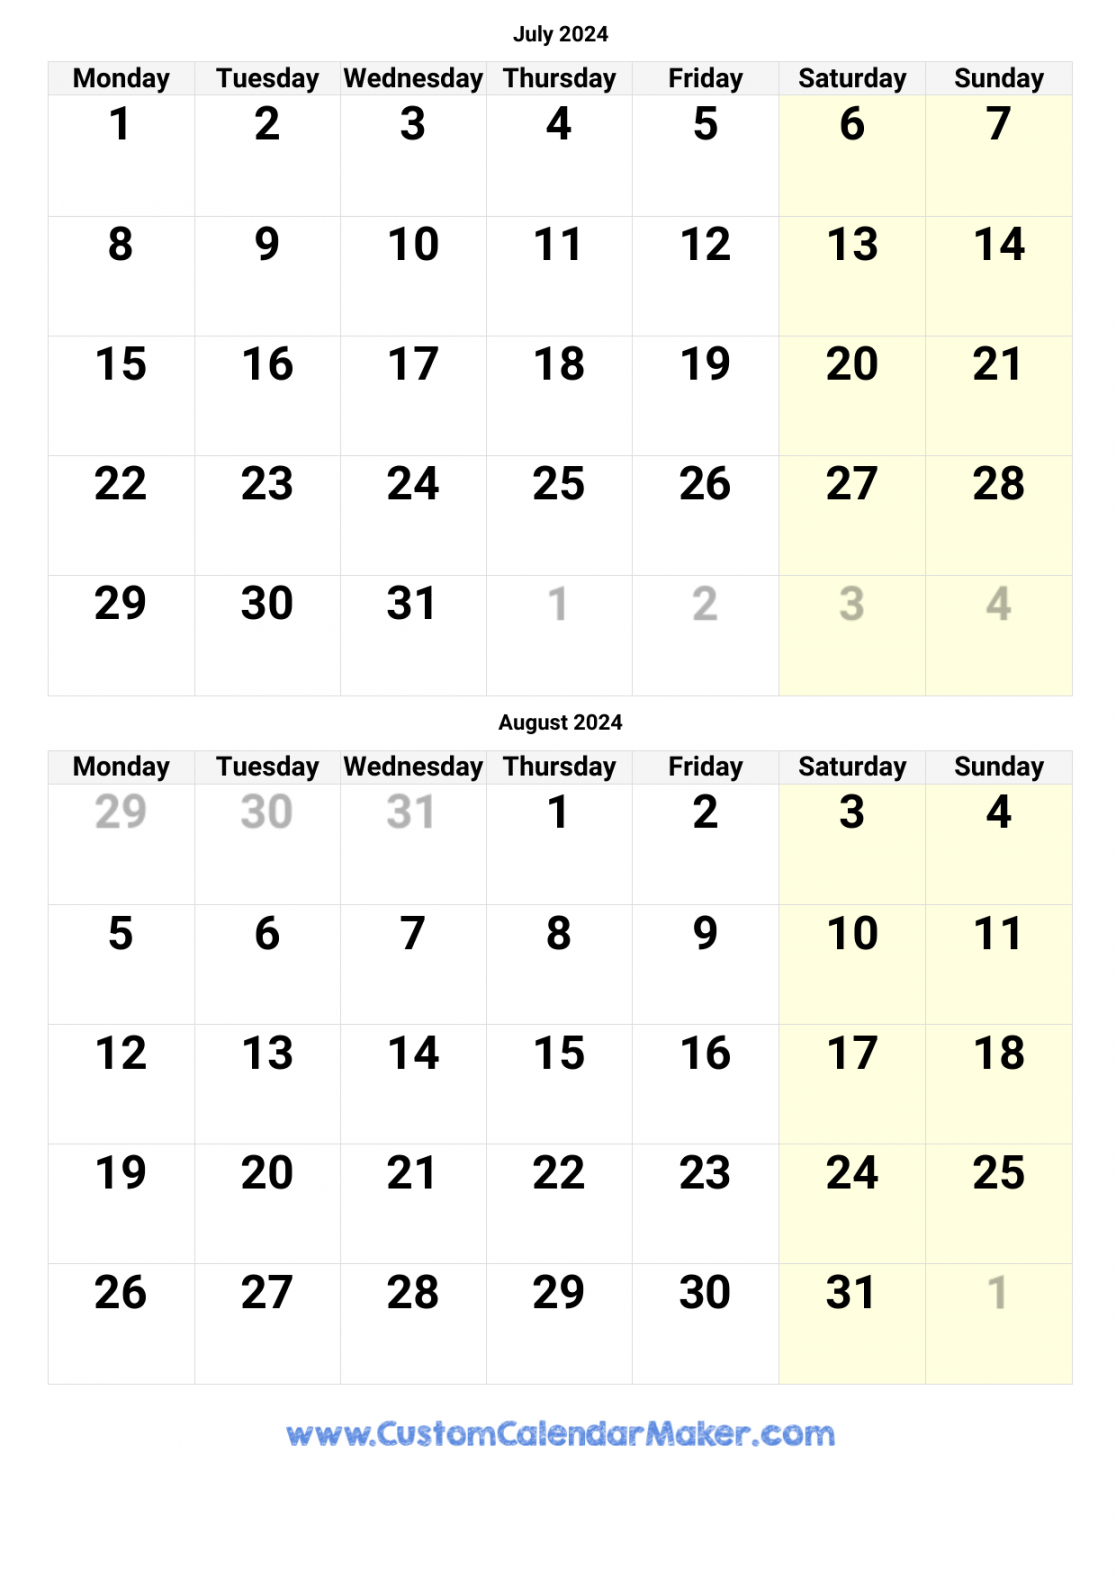 July August September Calendar 2024 In 2024 | September Calendar within July Aug Sept Calendar 2024